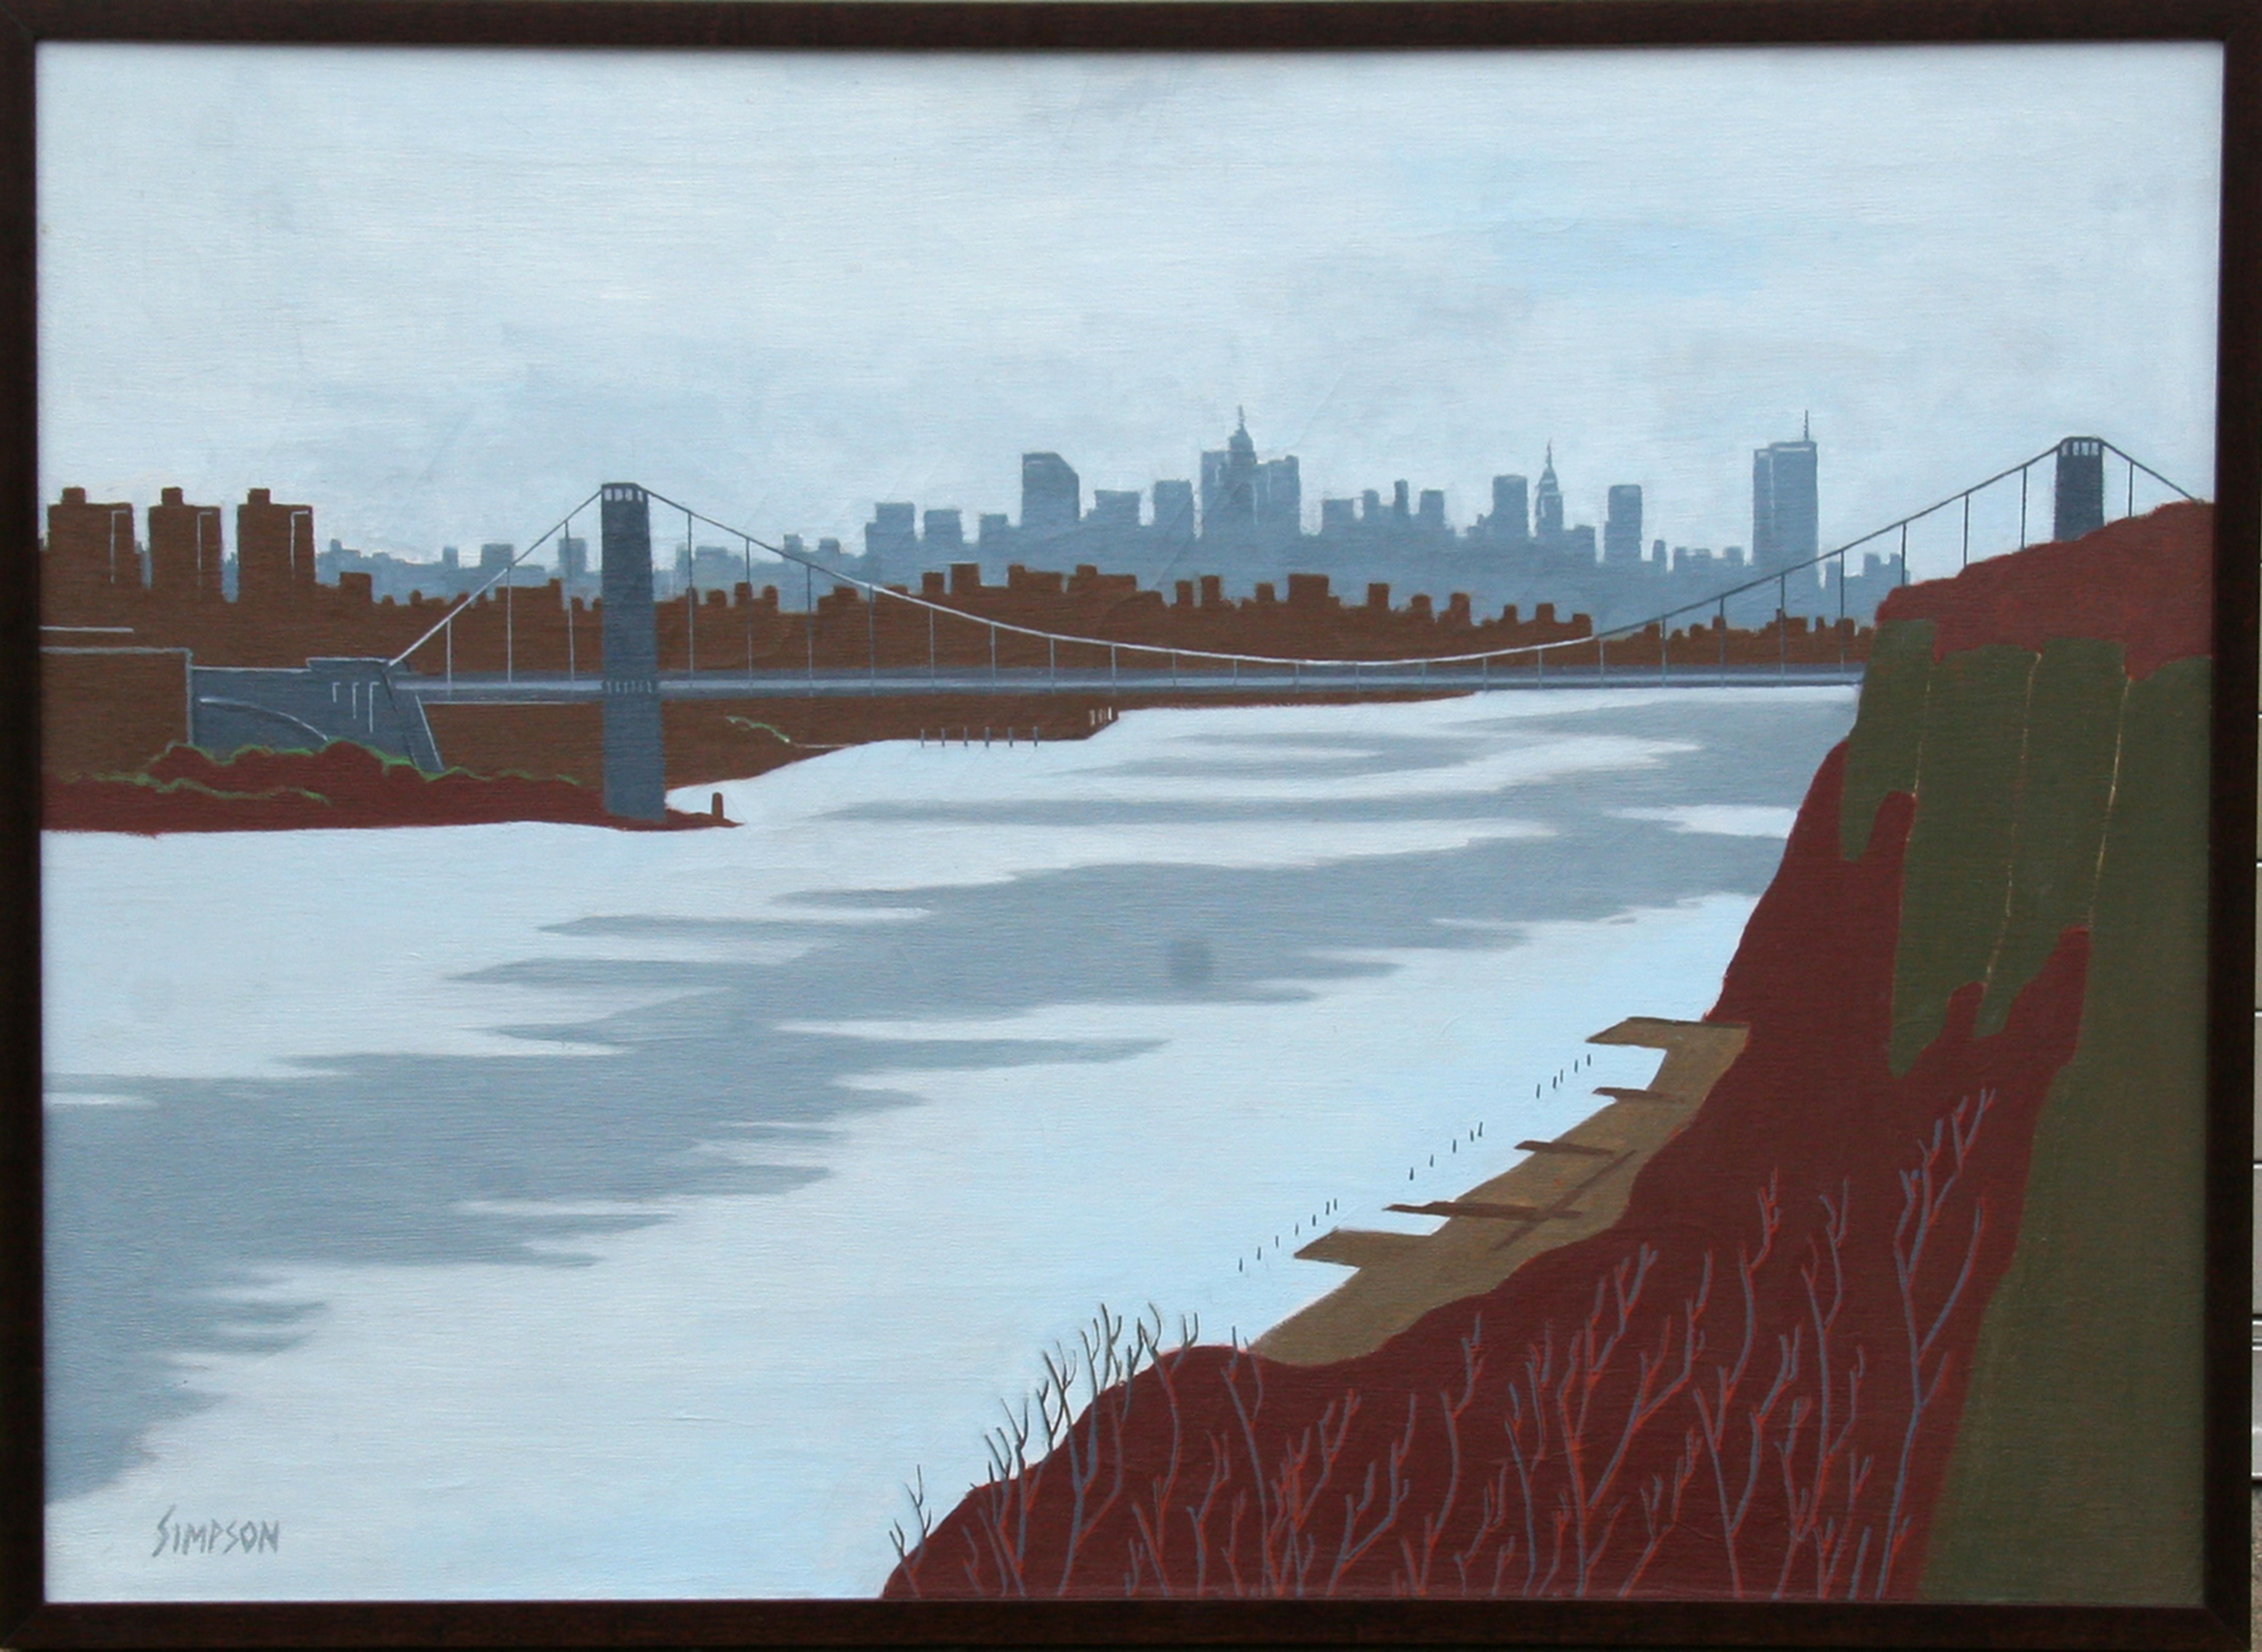 Künstler: Allan Simpson, Amerikaner (1935 -  )
Titel: Winter, George-Washington-Brücke
Jahr: 1996
Medium: Öl auf Leinwand, signiert
Größe: 36 x 48 Zoll